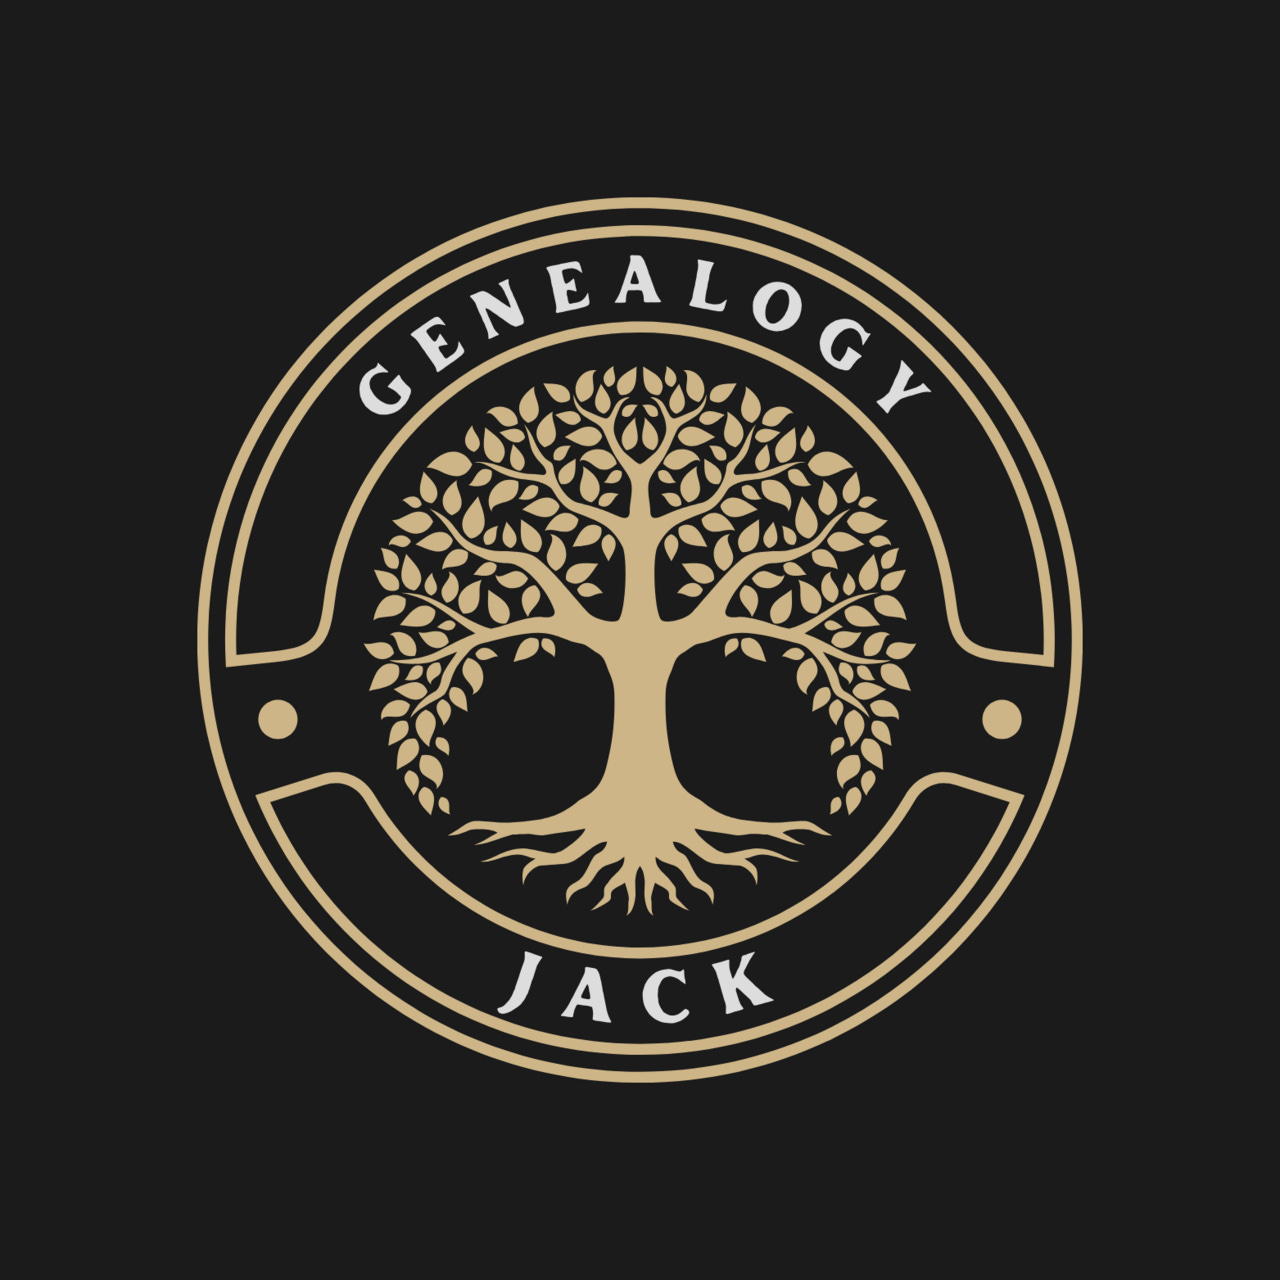 Genealogy Jack